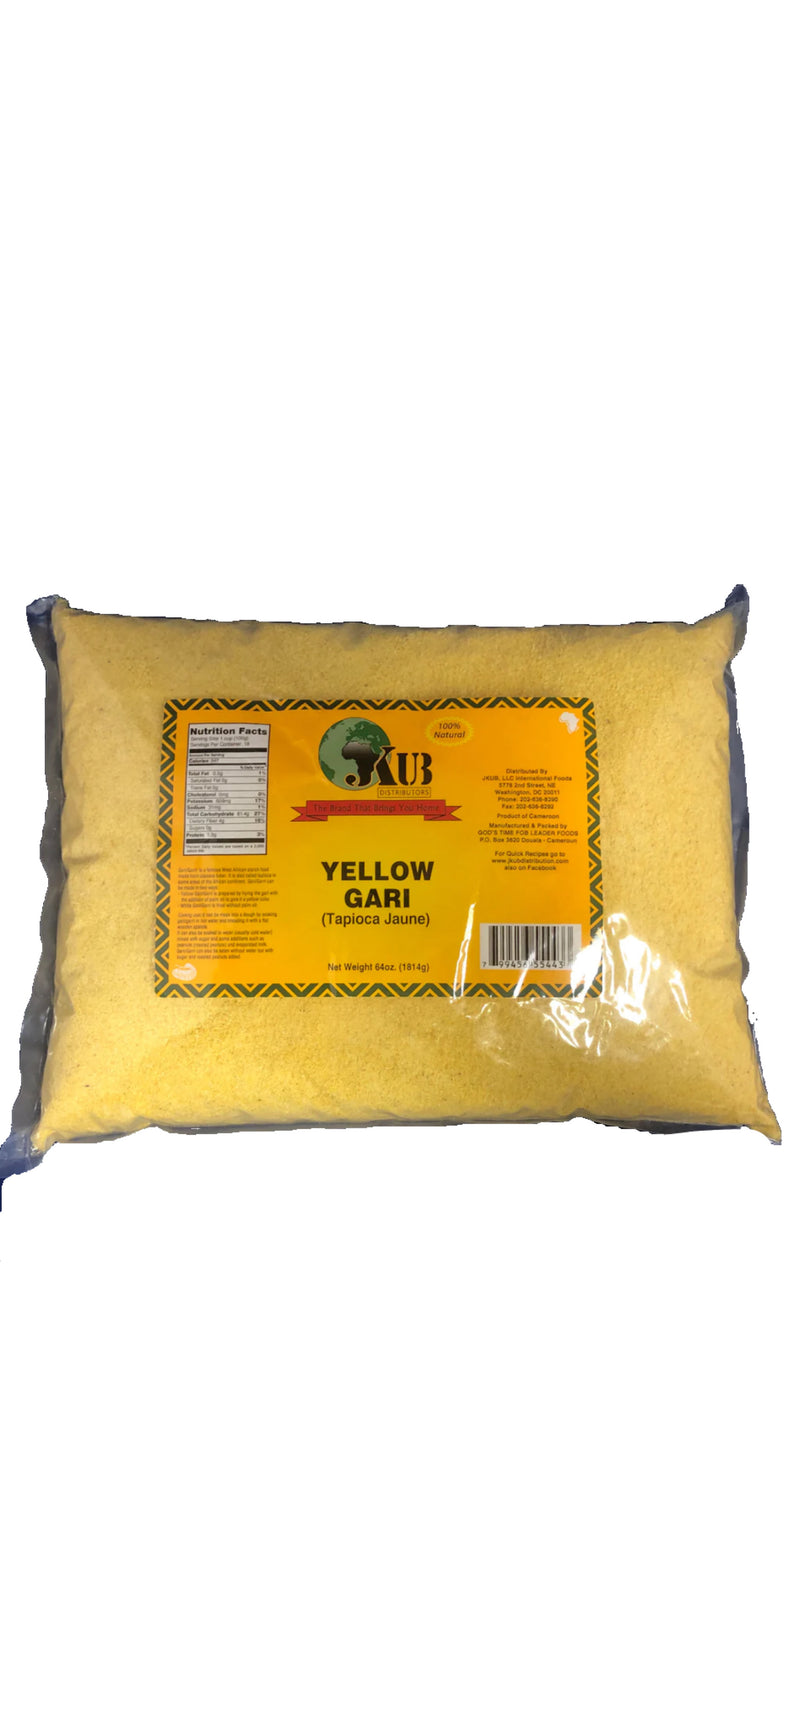 Yellow Gari - JKUB Gari